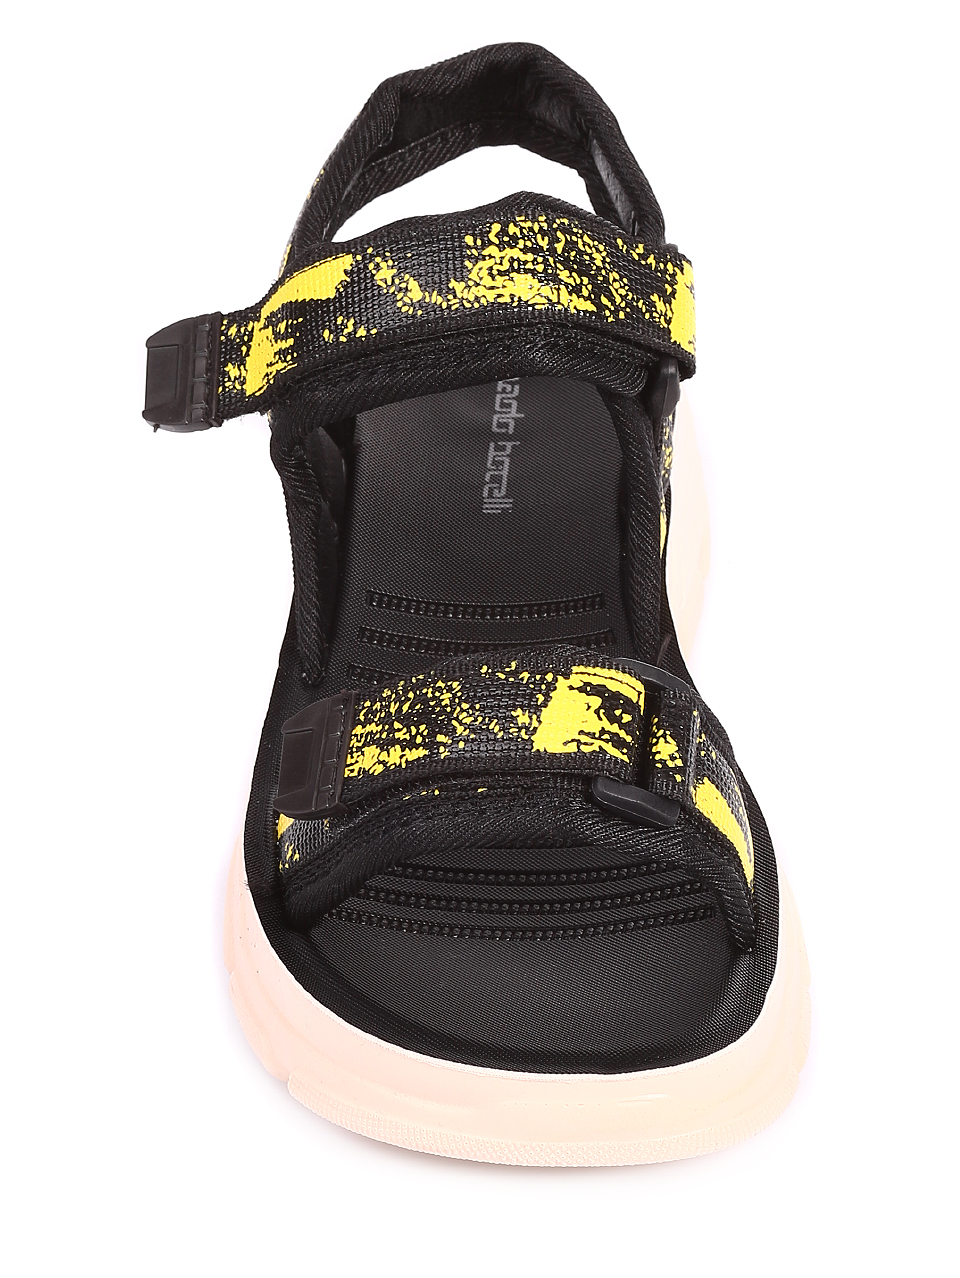 Ежедневни дамски сандали в жълто 4D-20266 yellow